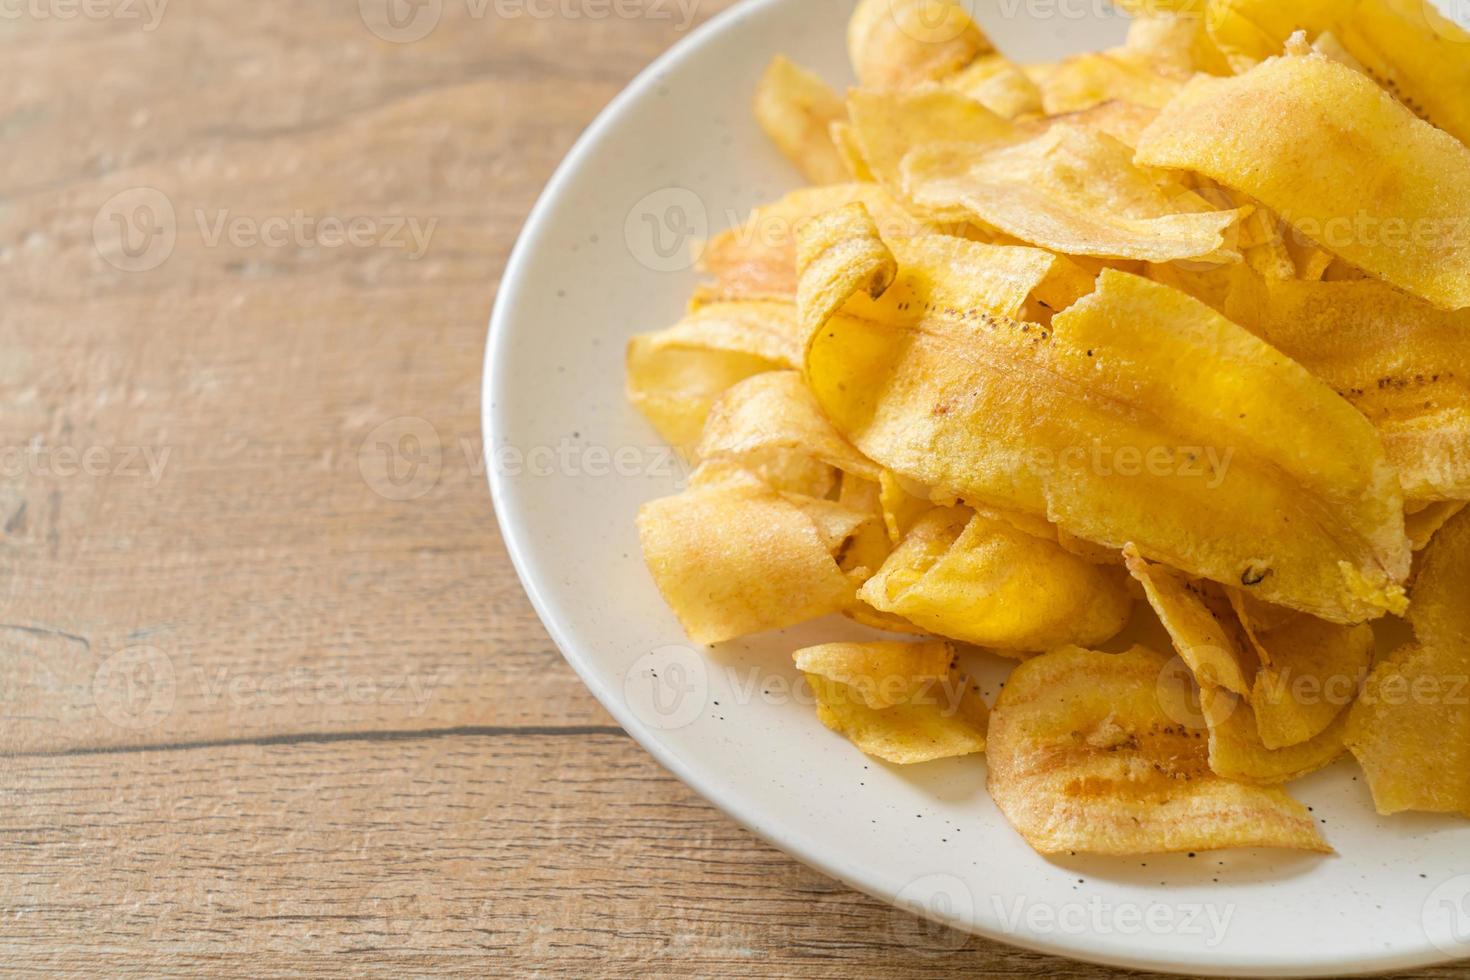 chips de plátano - plátano en rodajas frito o al horno foto